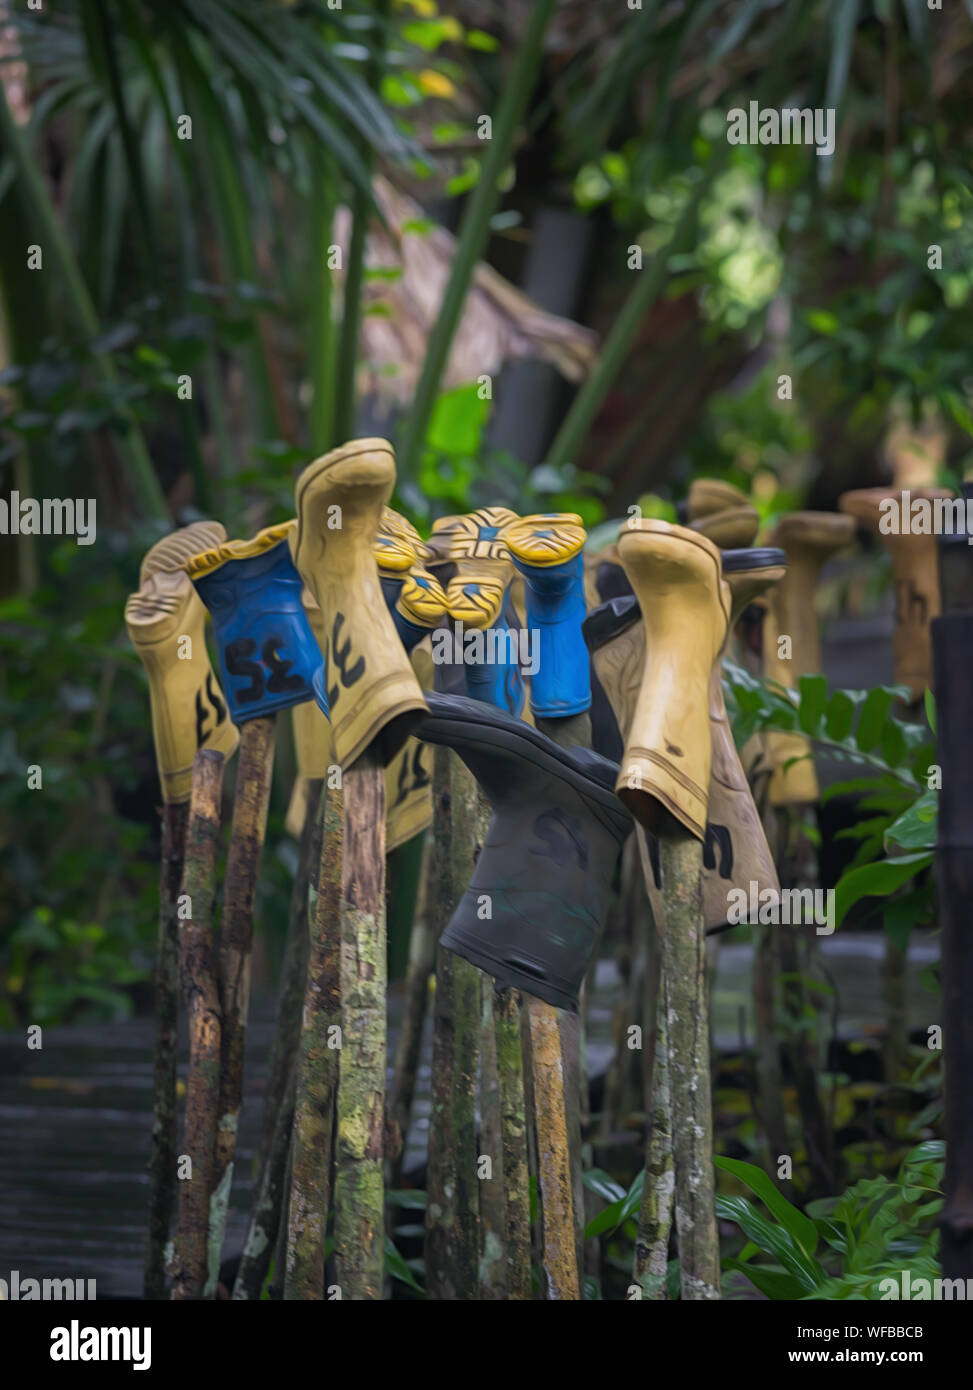 Blick auf Gummi Schuhe zum Trocknen in einem tropischen Camp aufgehängt Stockfoto